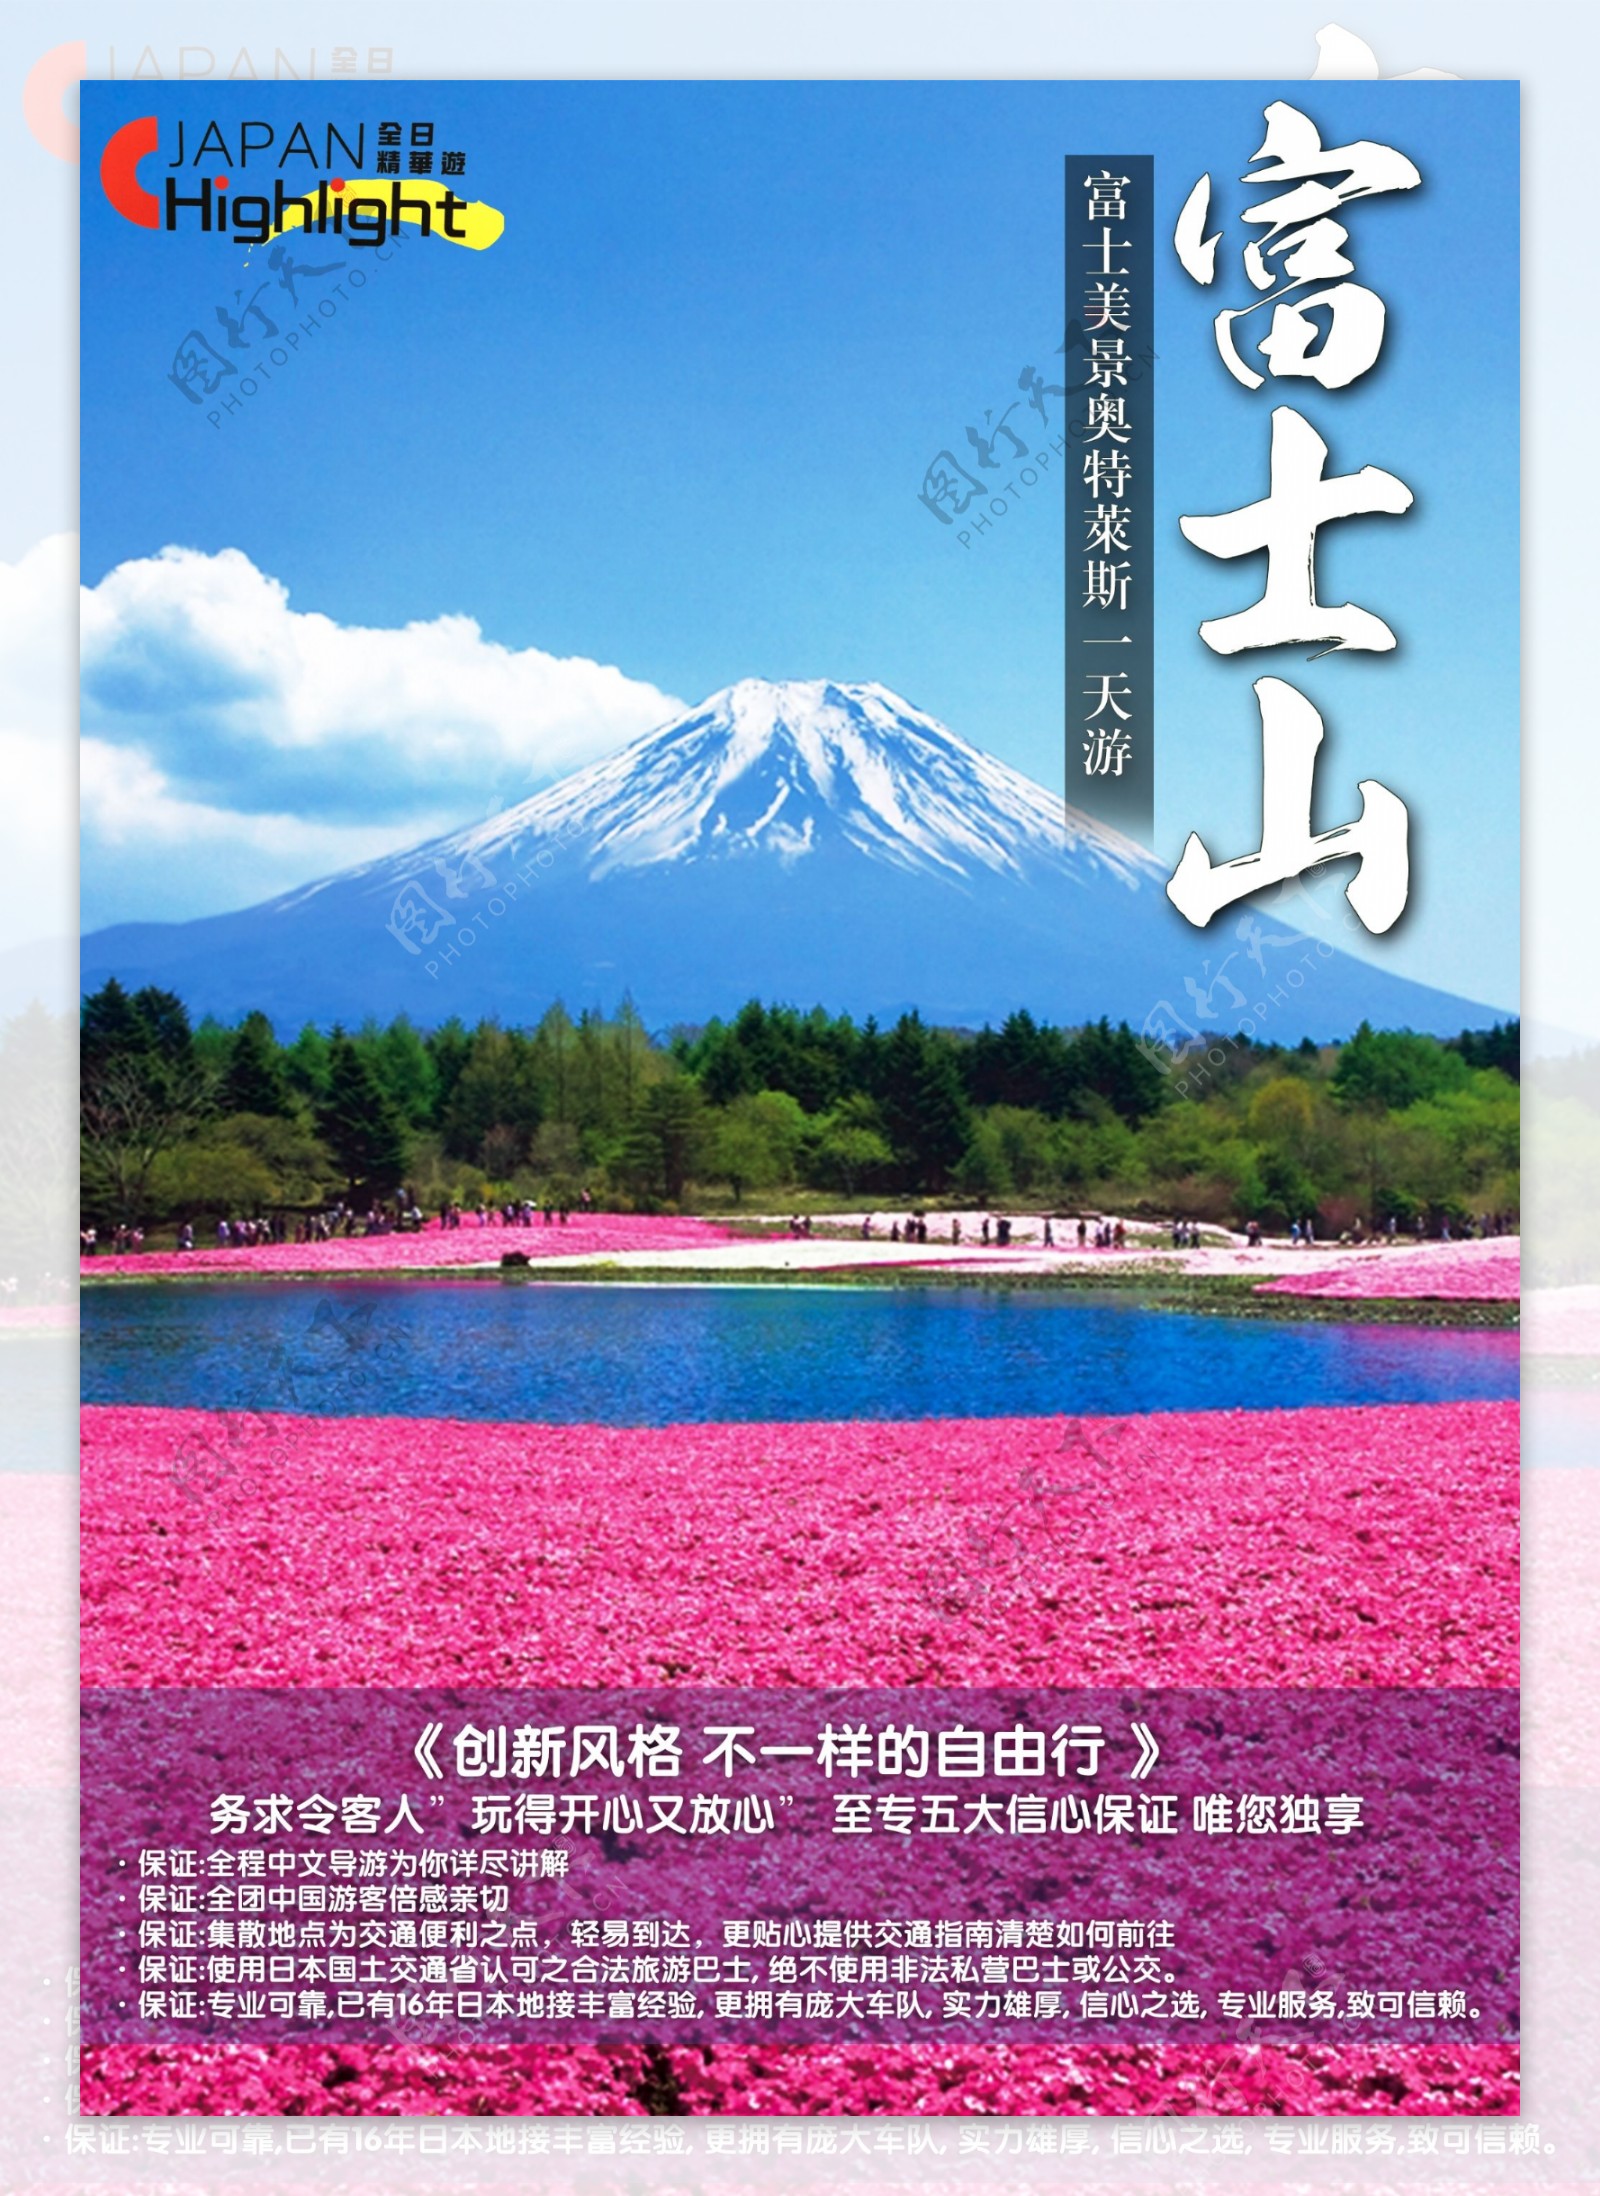 富士山五合目宣传海报